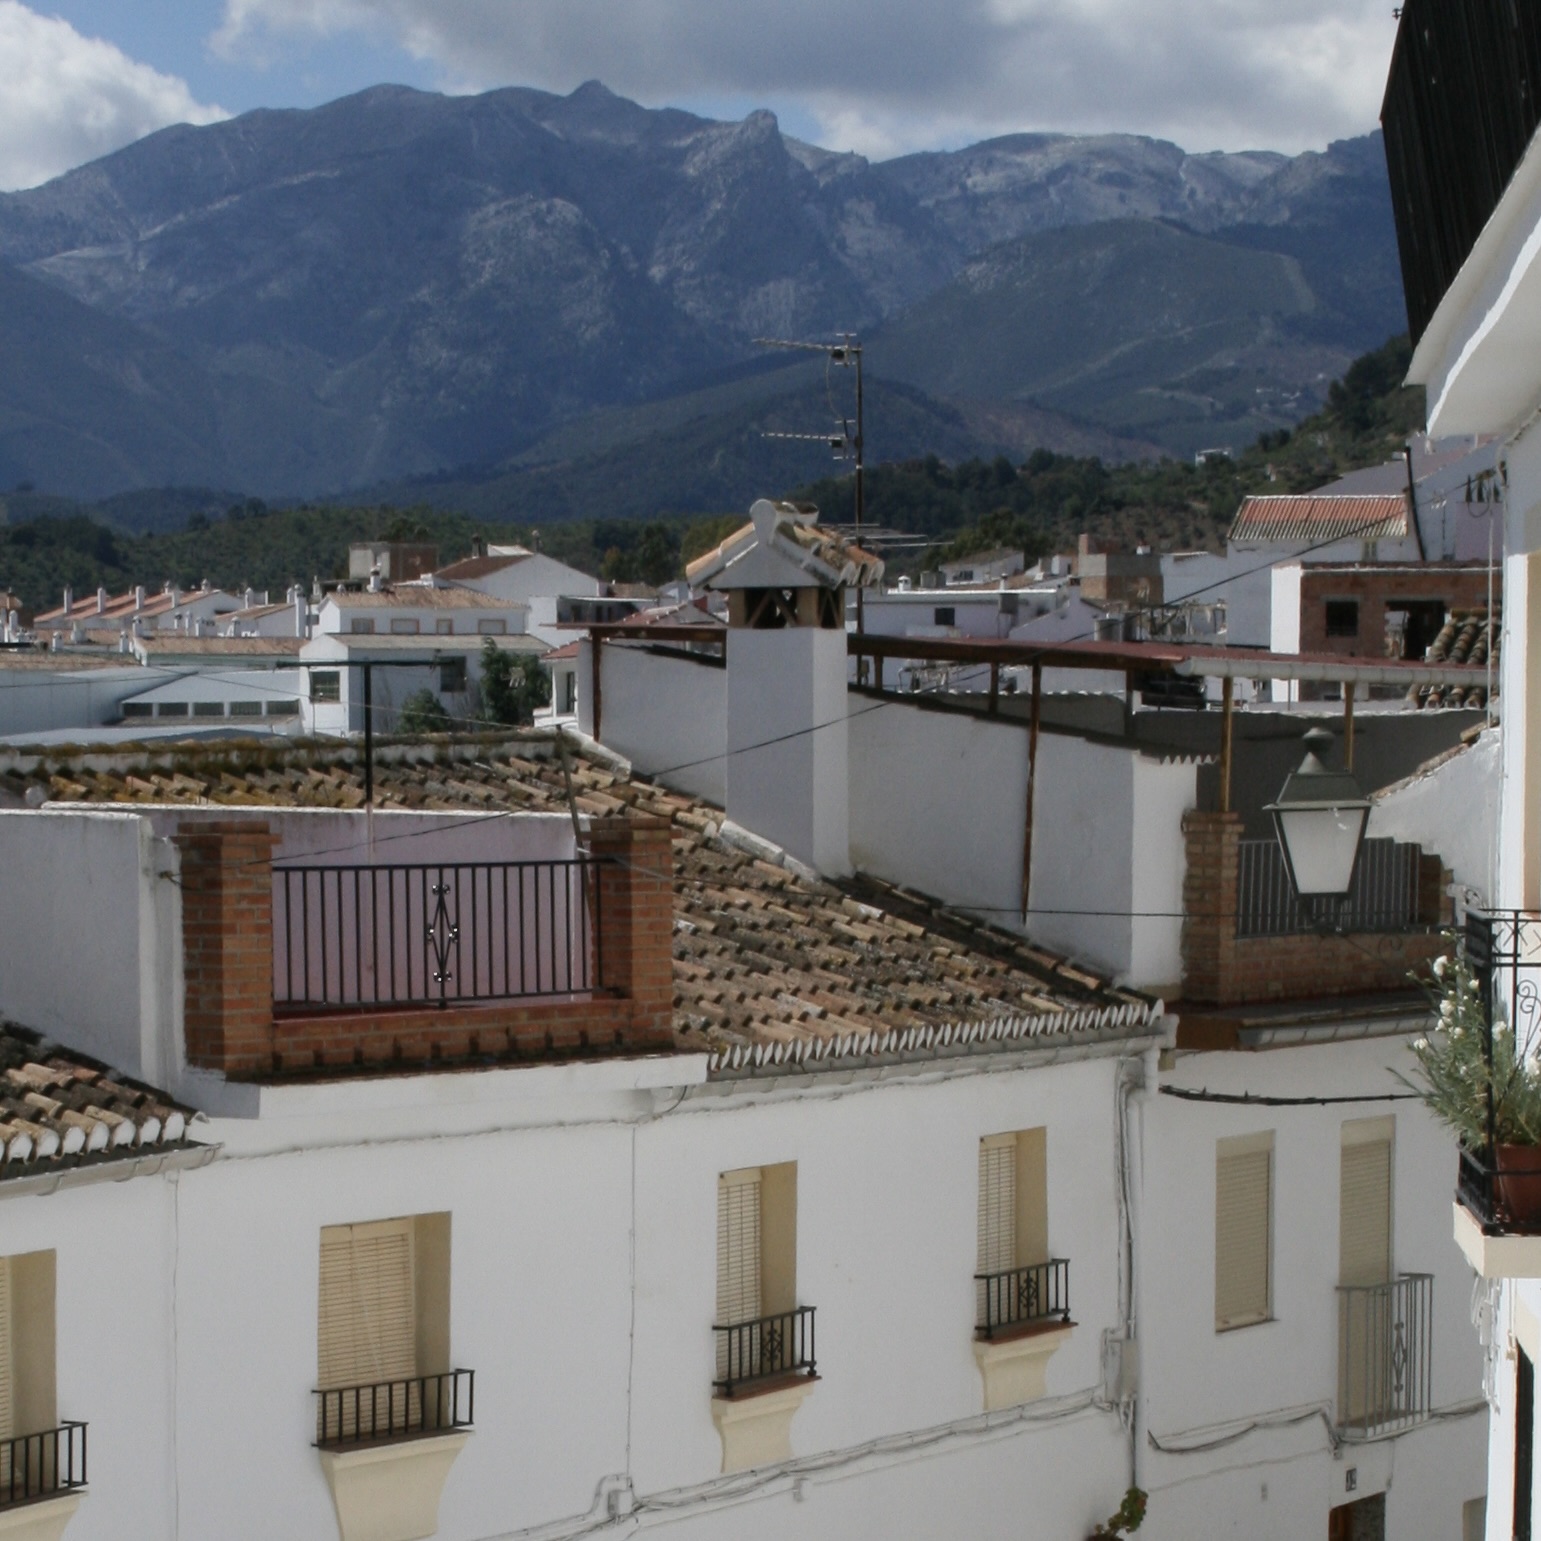 Ontdek de betoverde schoonheid van de witte dorpen van de Sierra de las Nieves